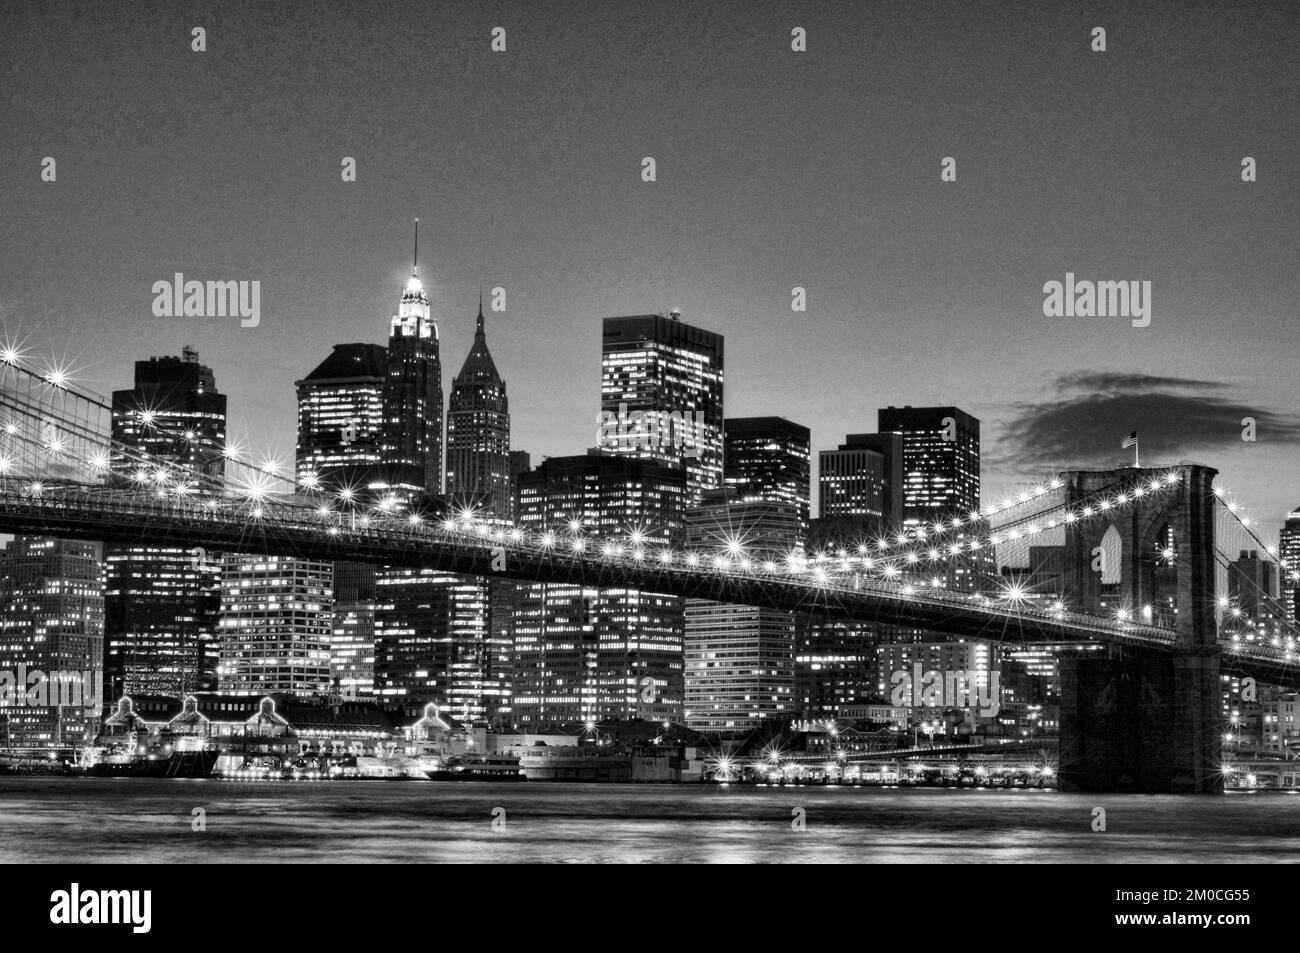 Imagen estilizada vintage del Puente de Brooklyn en la ciudad de Nueva York, EE.UU Foto de stock